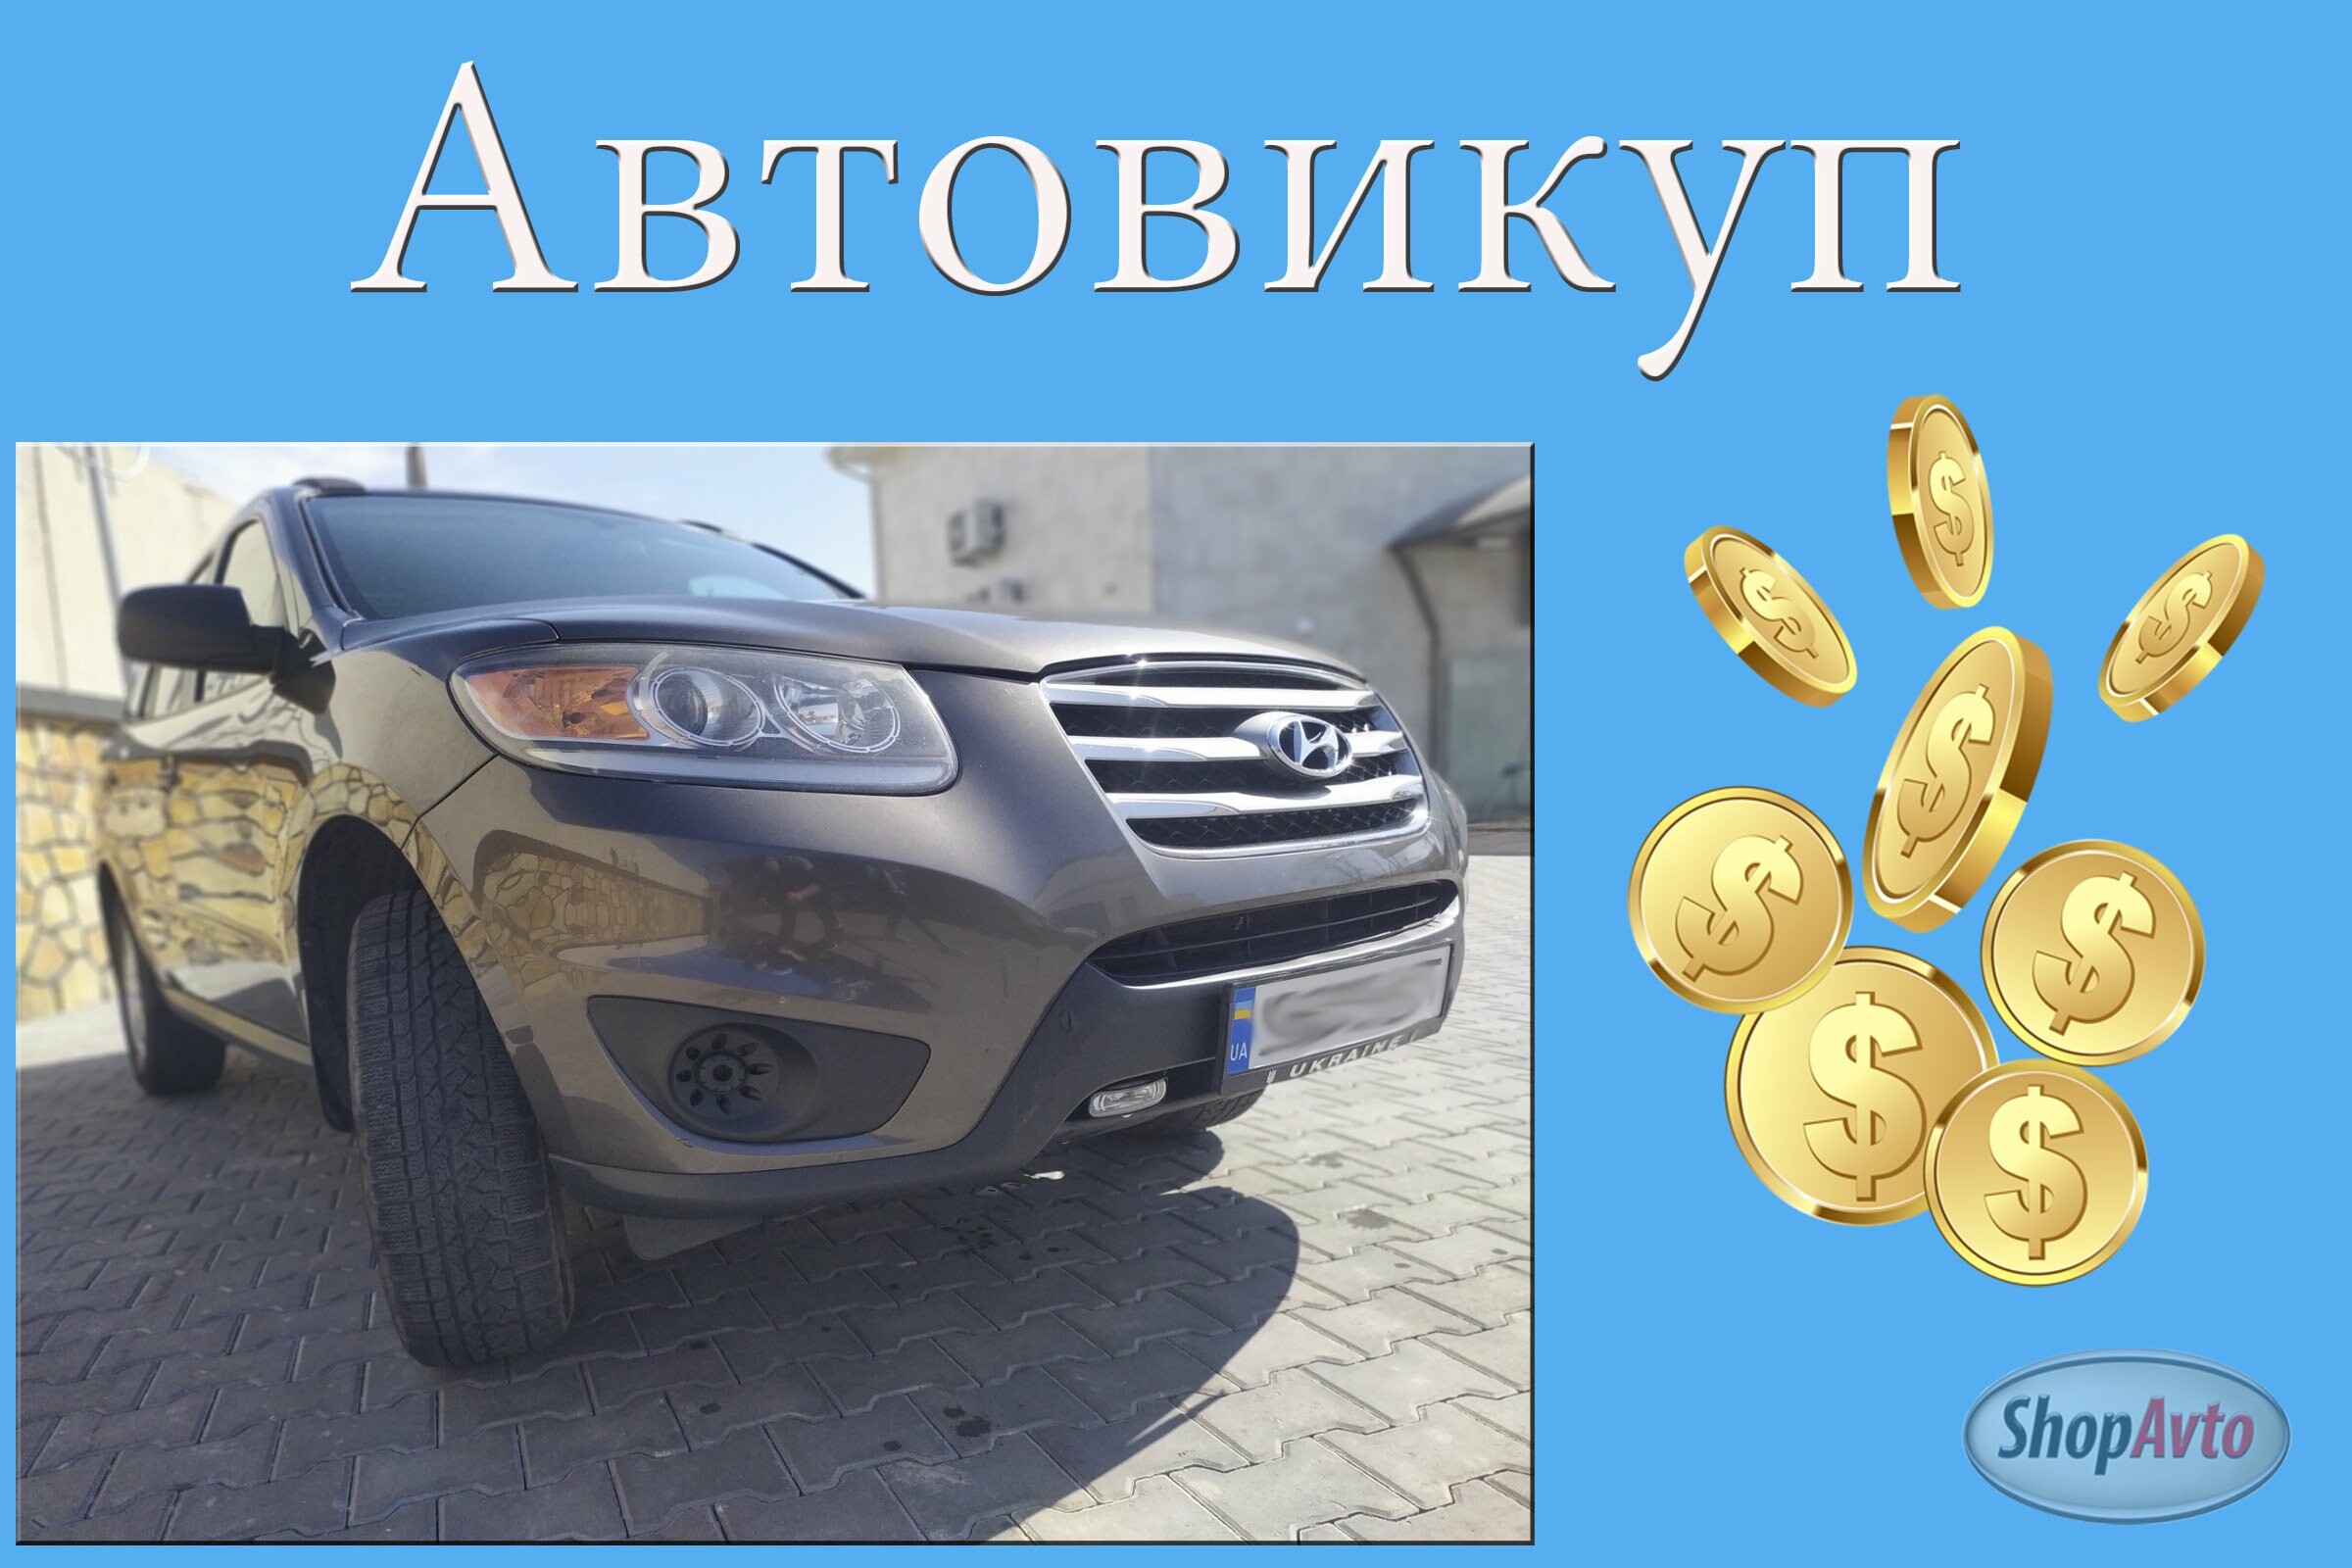 Автовыкуп Вознесенск – выкуп авто в Николаевской области 